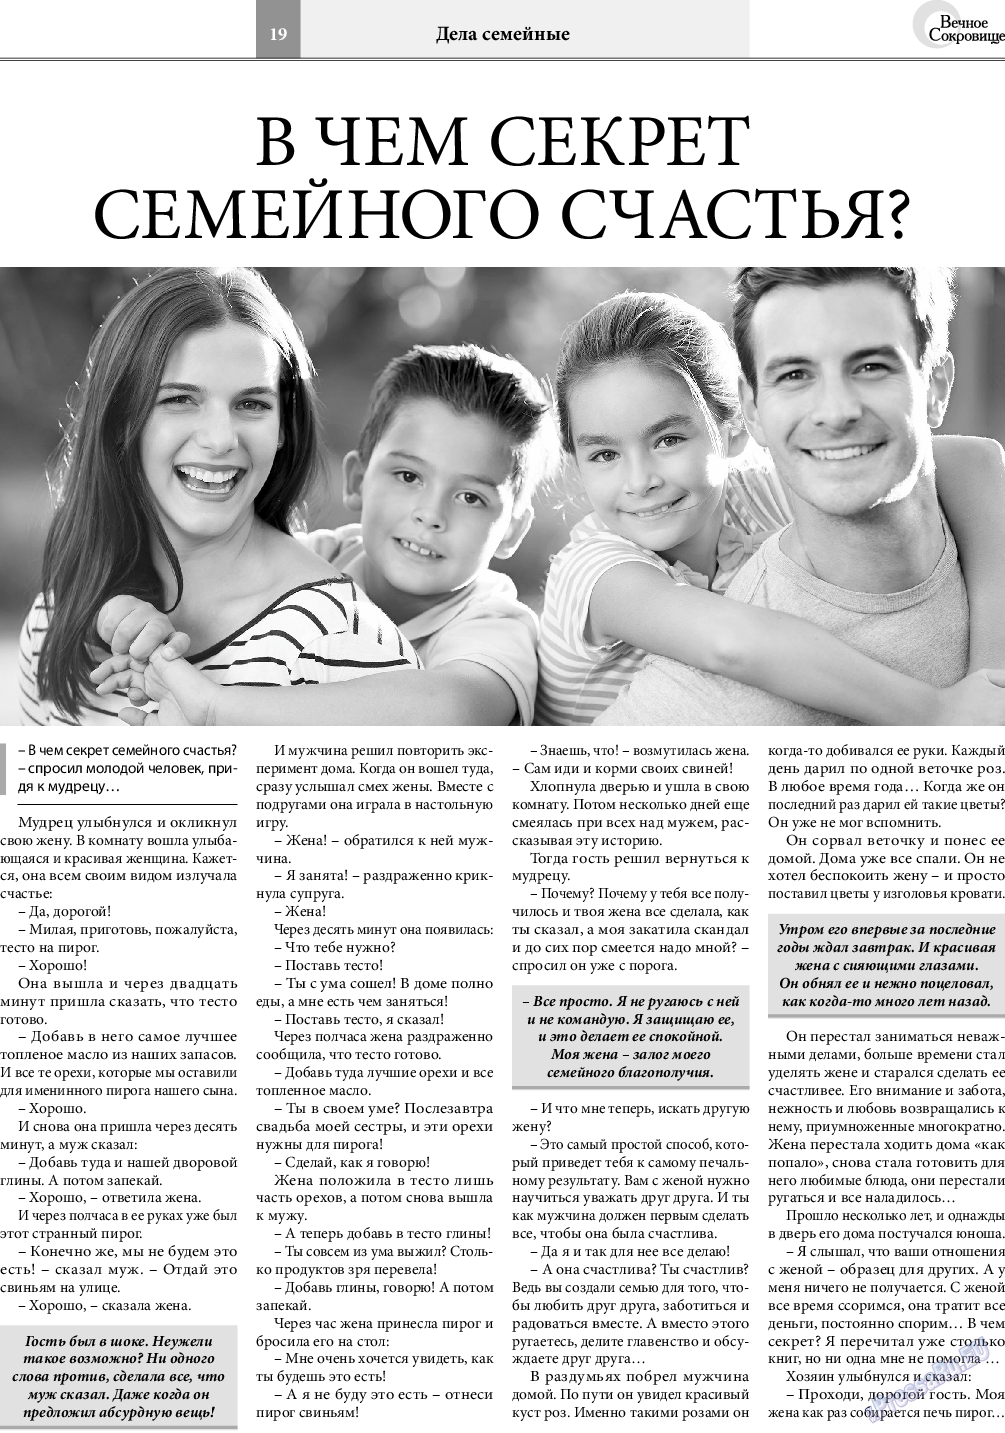 Вечное сокровище, газета. 2021 №4 стр.19